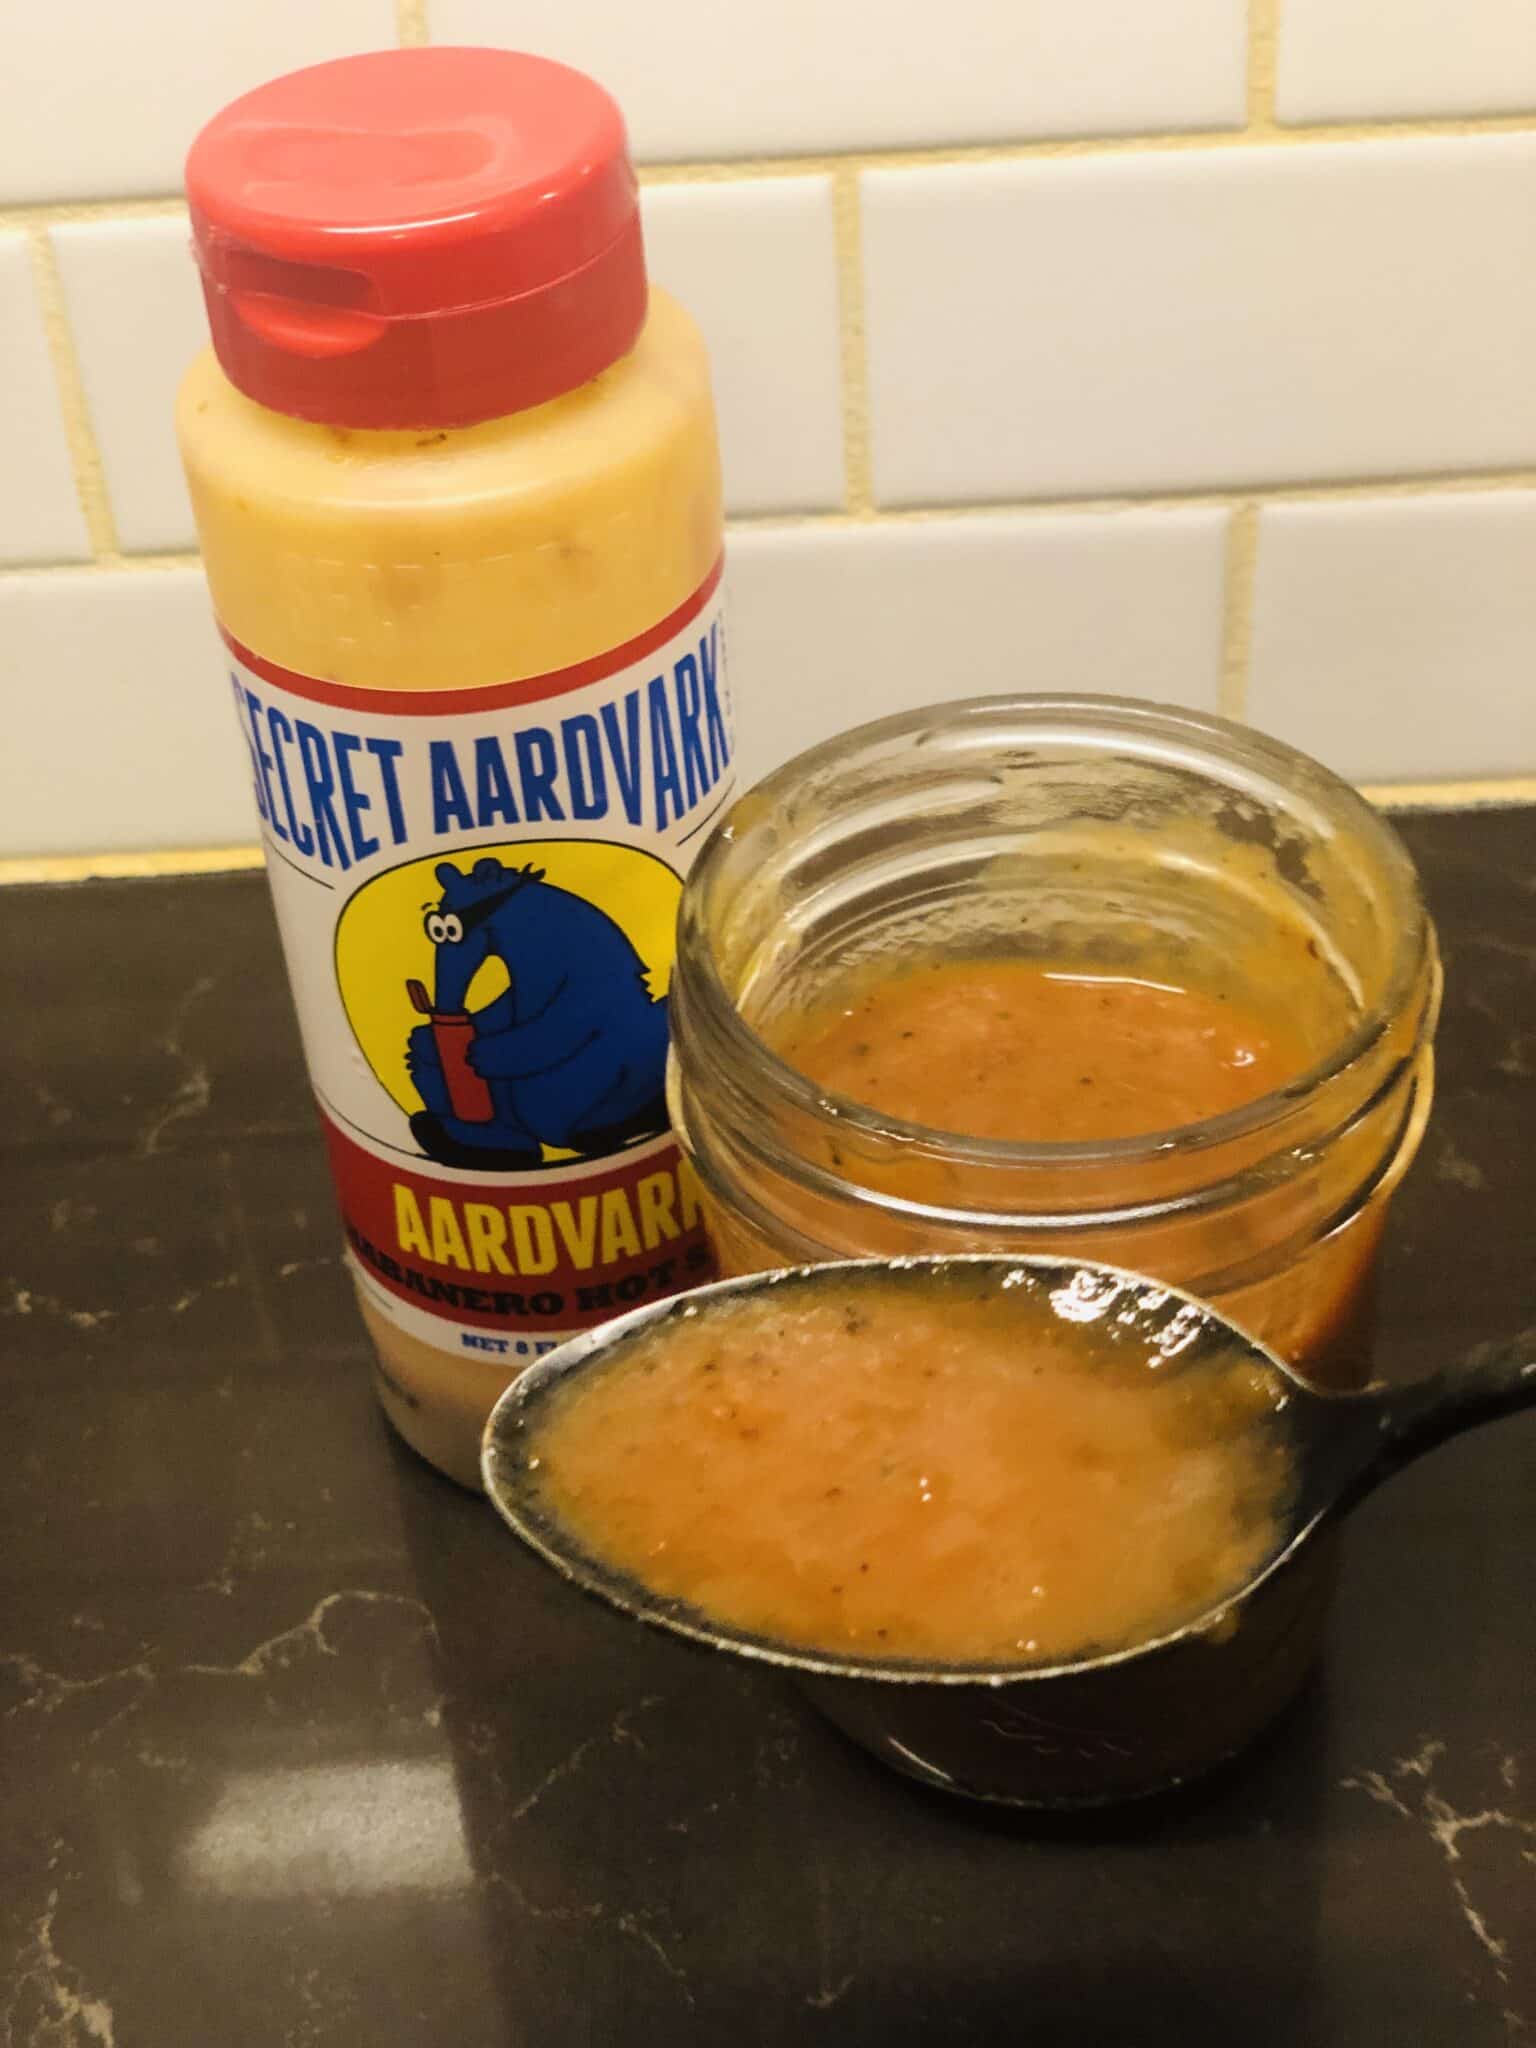 Secret Aardvark Habanero Hot Sauce on spoon